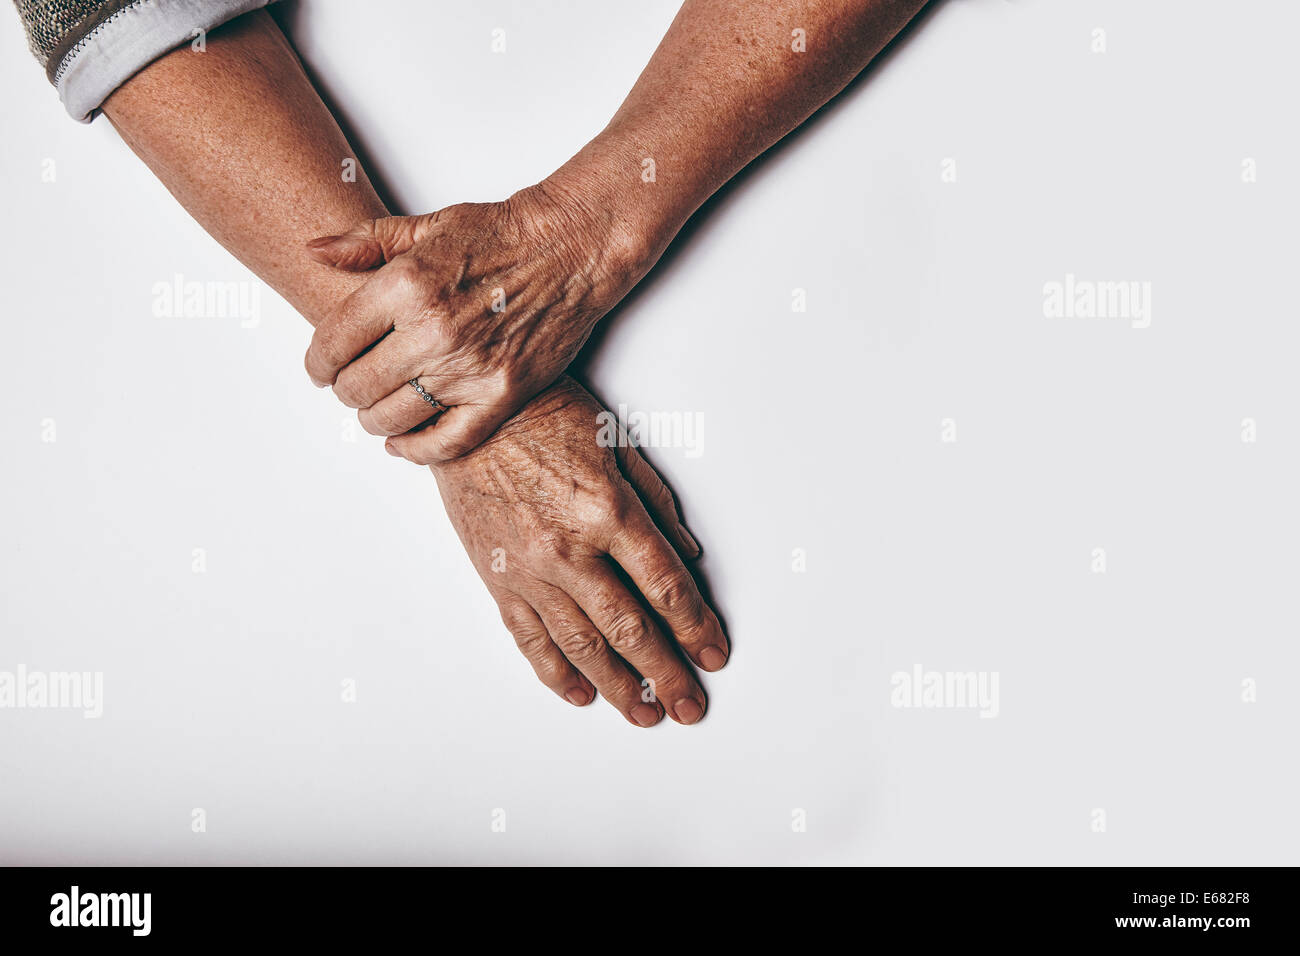 Draufsicht auf eine ältere Frau Hände ruhen auf grauem Hintergrund. Entspannt, alte weibliche Hände zusammen. Stockfoto